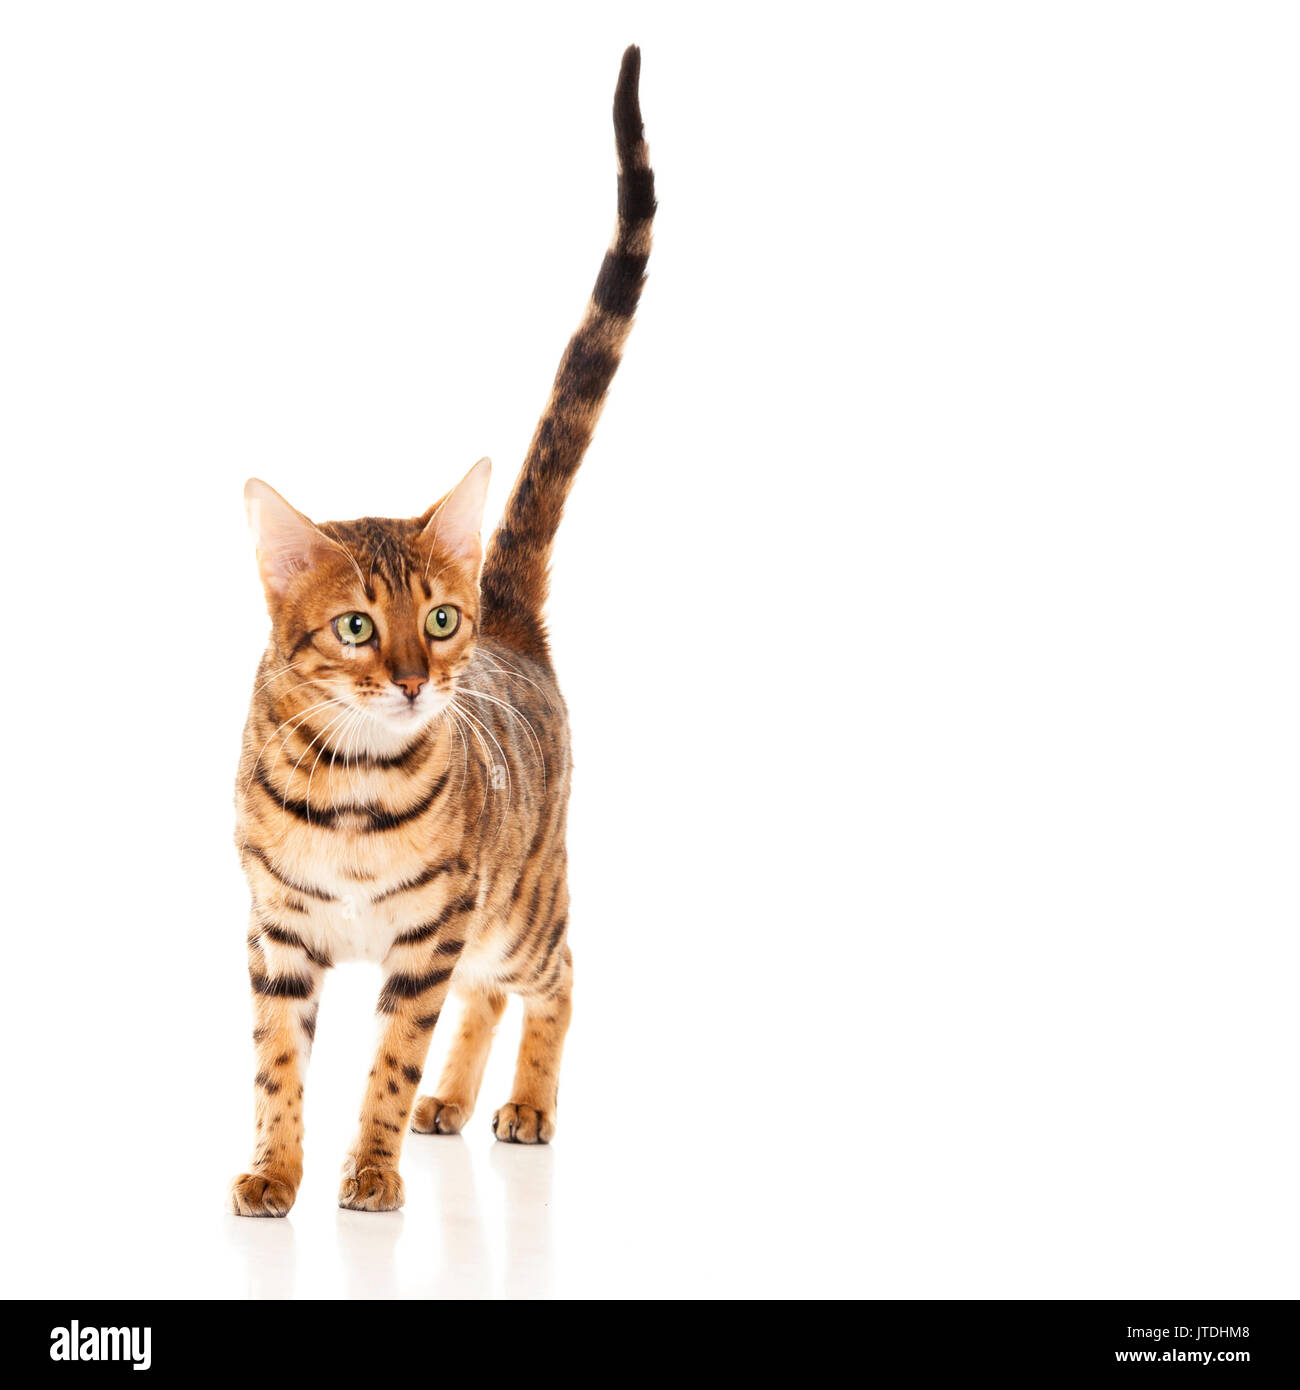 Weibliche Bengal Katze mit Schwanz gerade nach oben auf weißem Hintergrund  isoliert Model Release: Nein Property Release: Nein Stockfotografie - Alamy